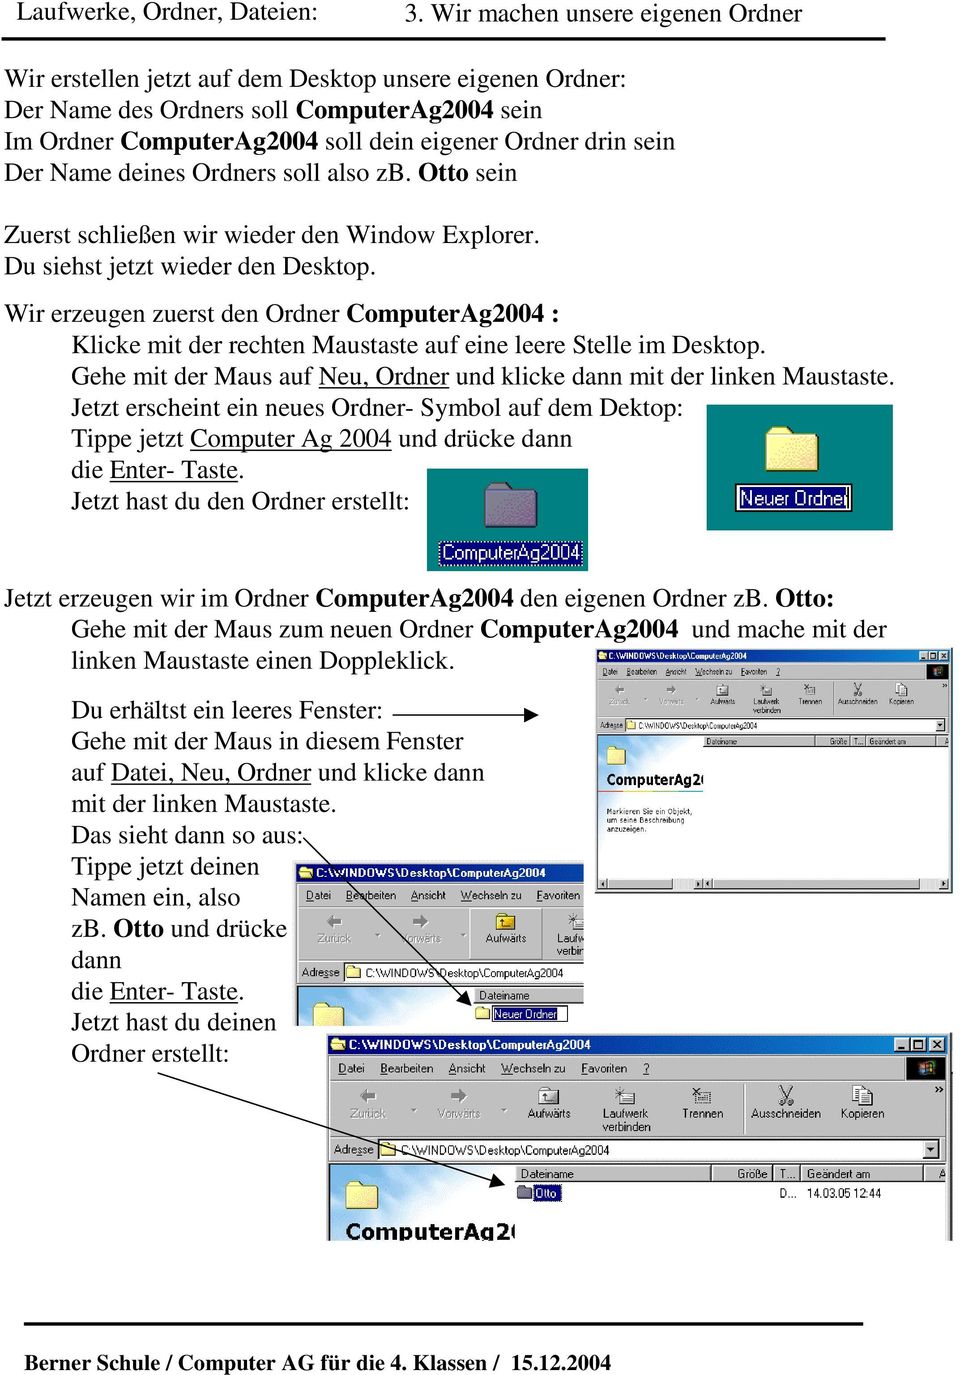 Wir erzeugen zuerst den Ordner ComputerAg2004 : Klicke mit der rechten Maustaste auf eine leere Stelle im Desktop. Gehe mit der Maus auf Neu, Ordner und klicke dann mit der linken Maustaste.